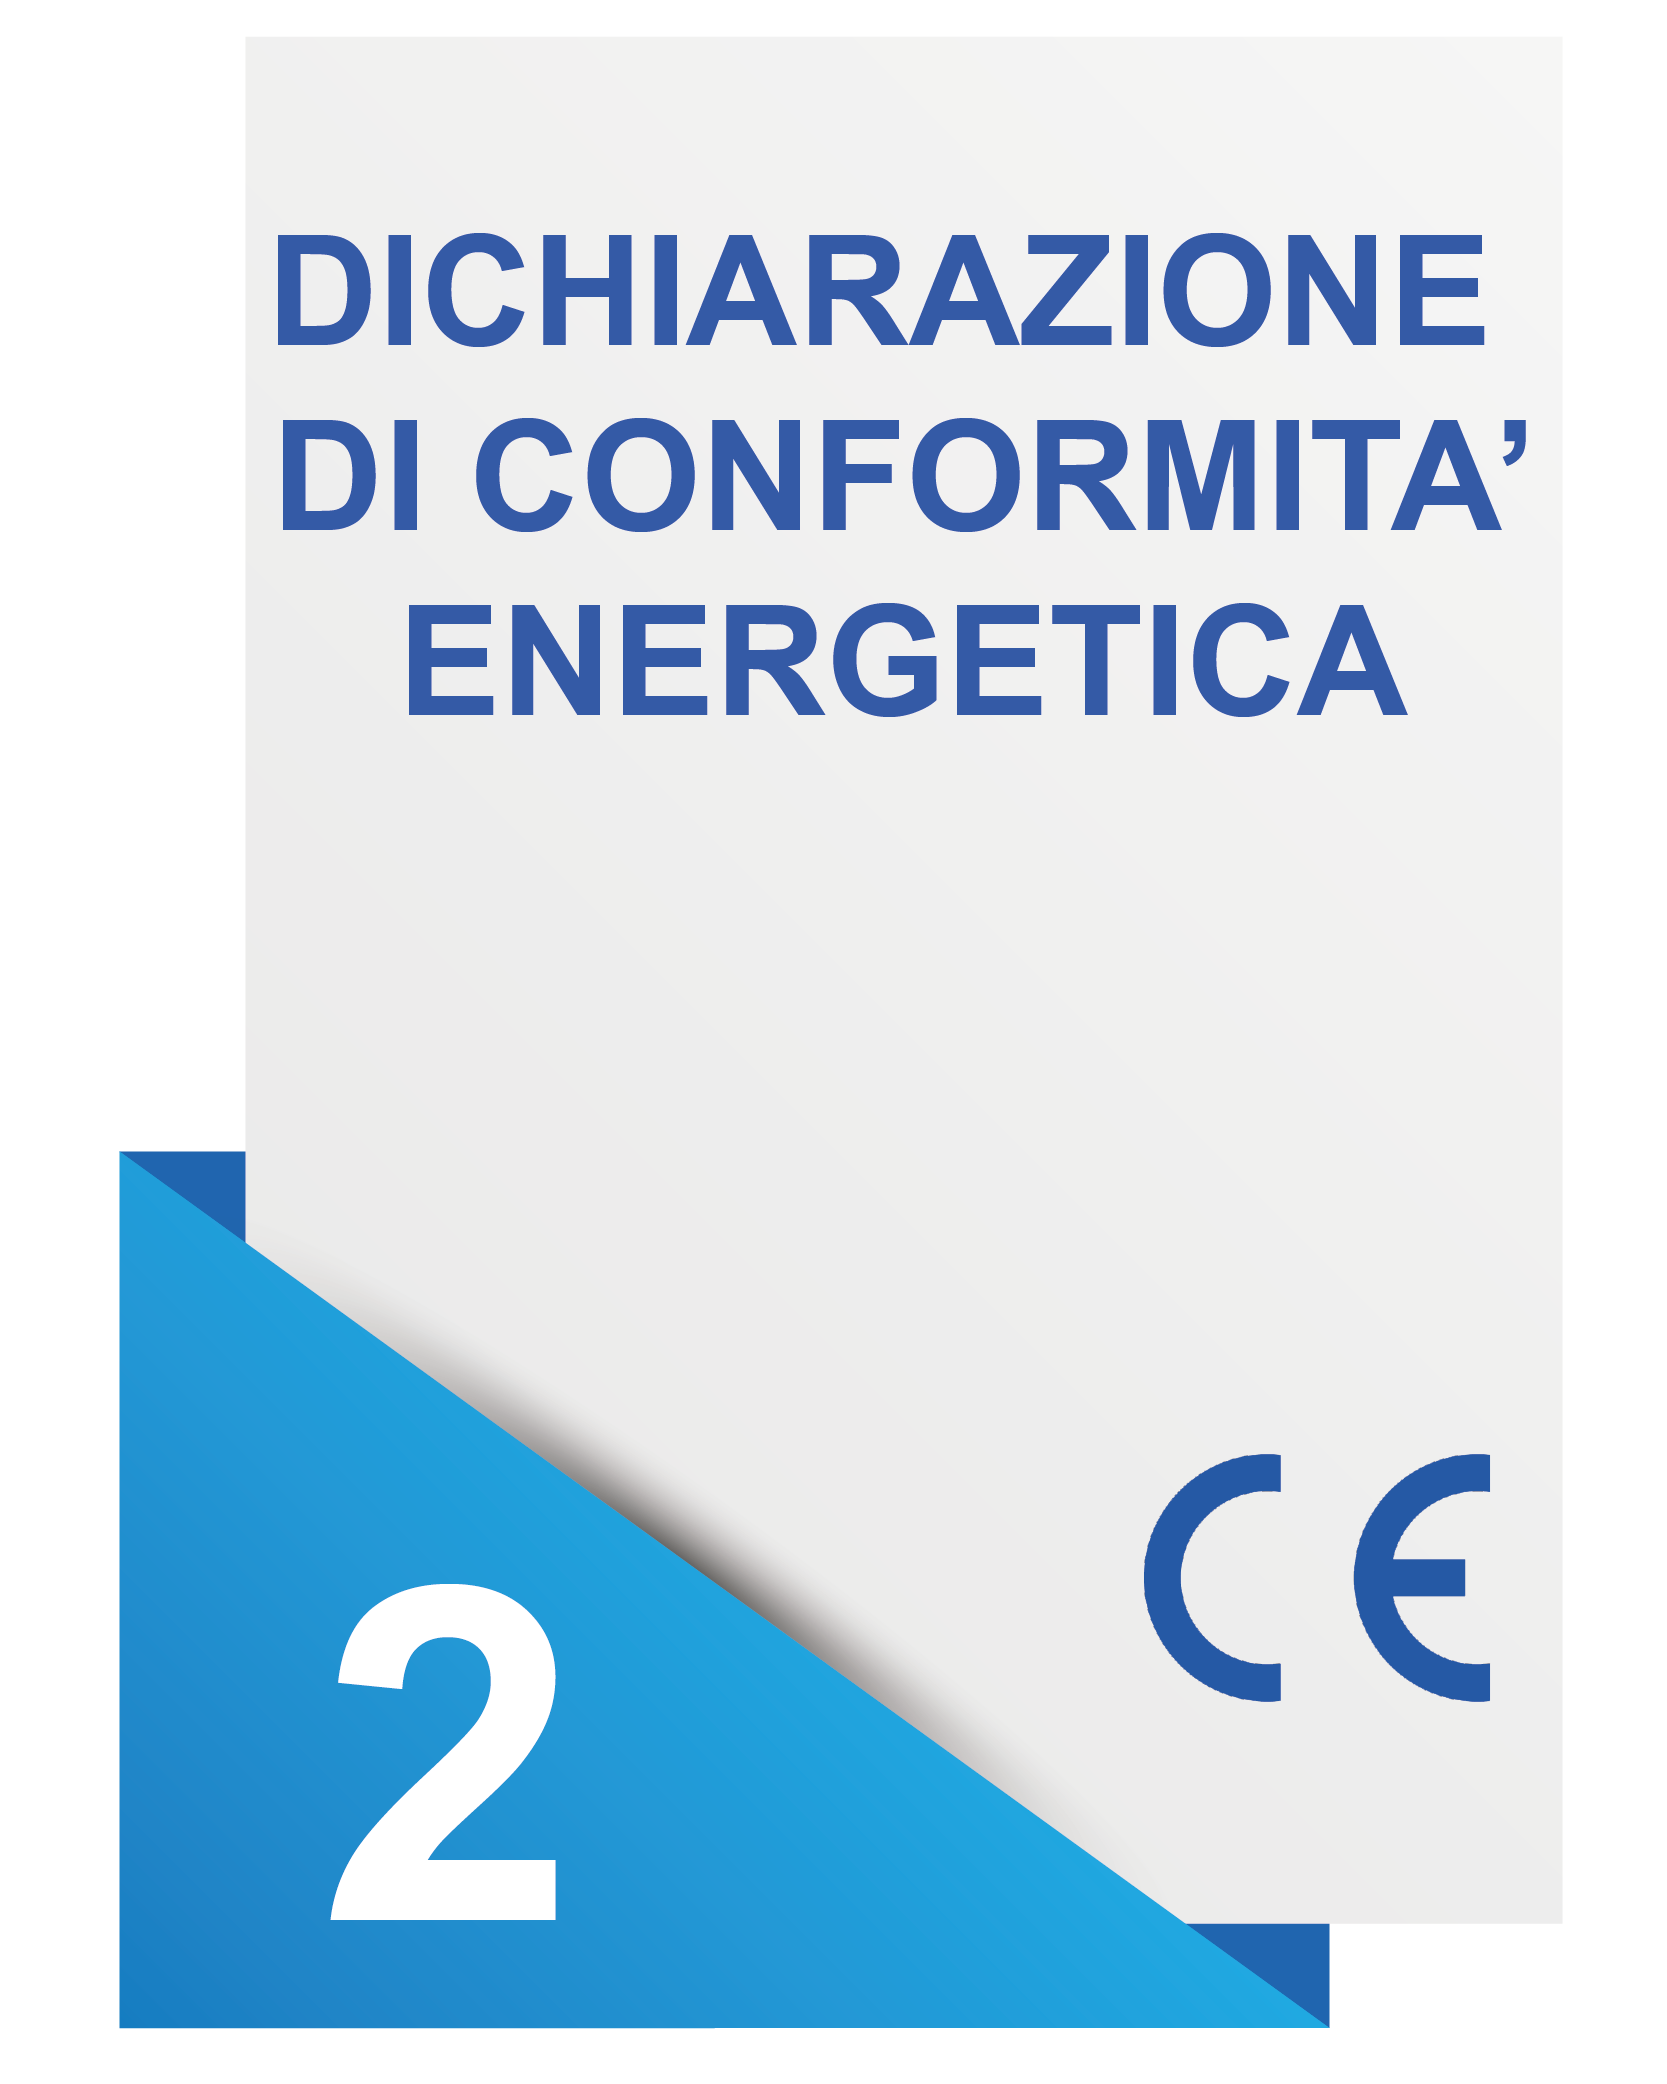 Marcatura CE Dichiarazione di conformita energetica - ANCELM